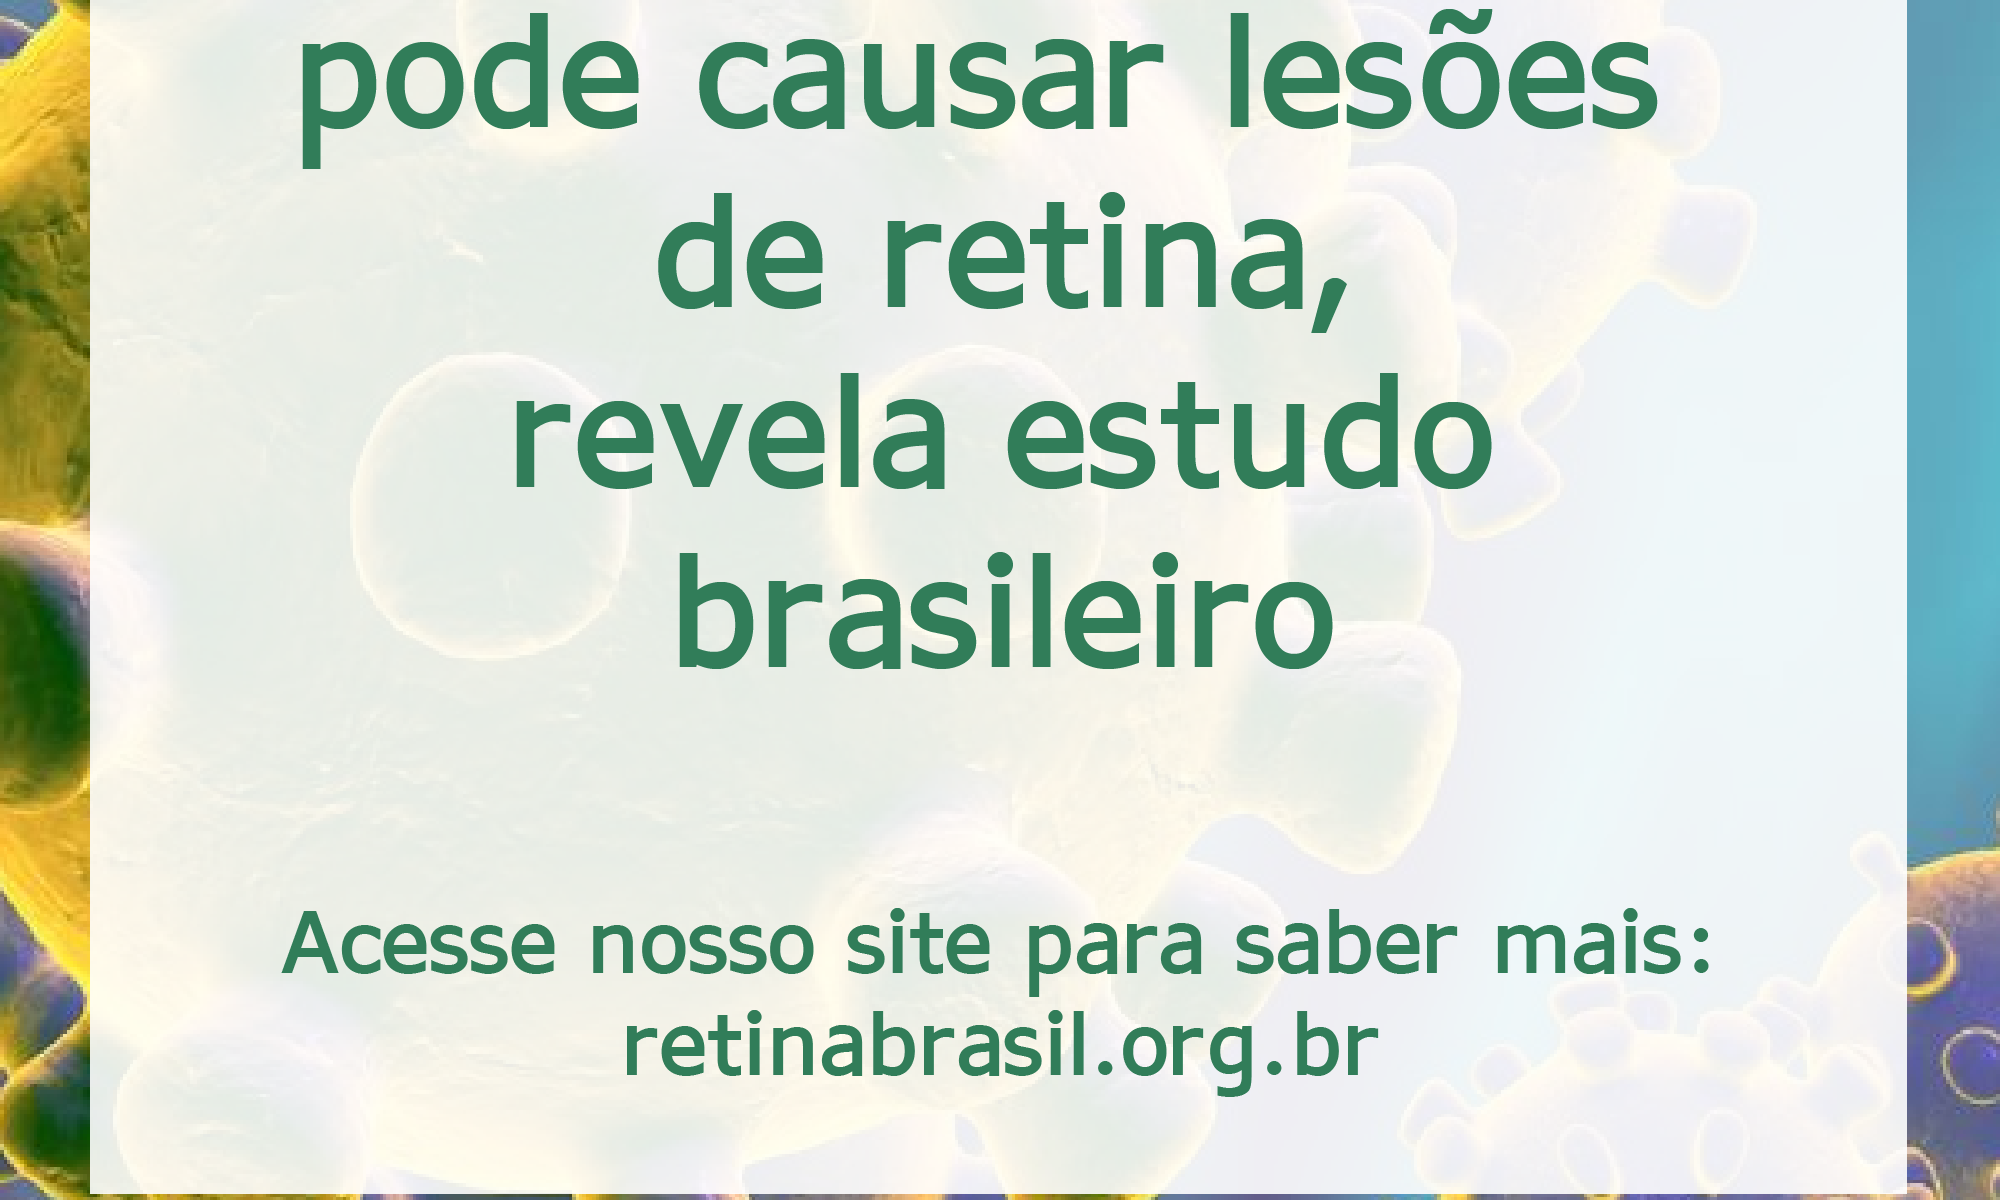 #PraCegoVer imamge ilustrativa com o título da notícia e a logo da Retina Brasil